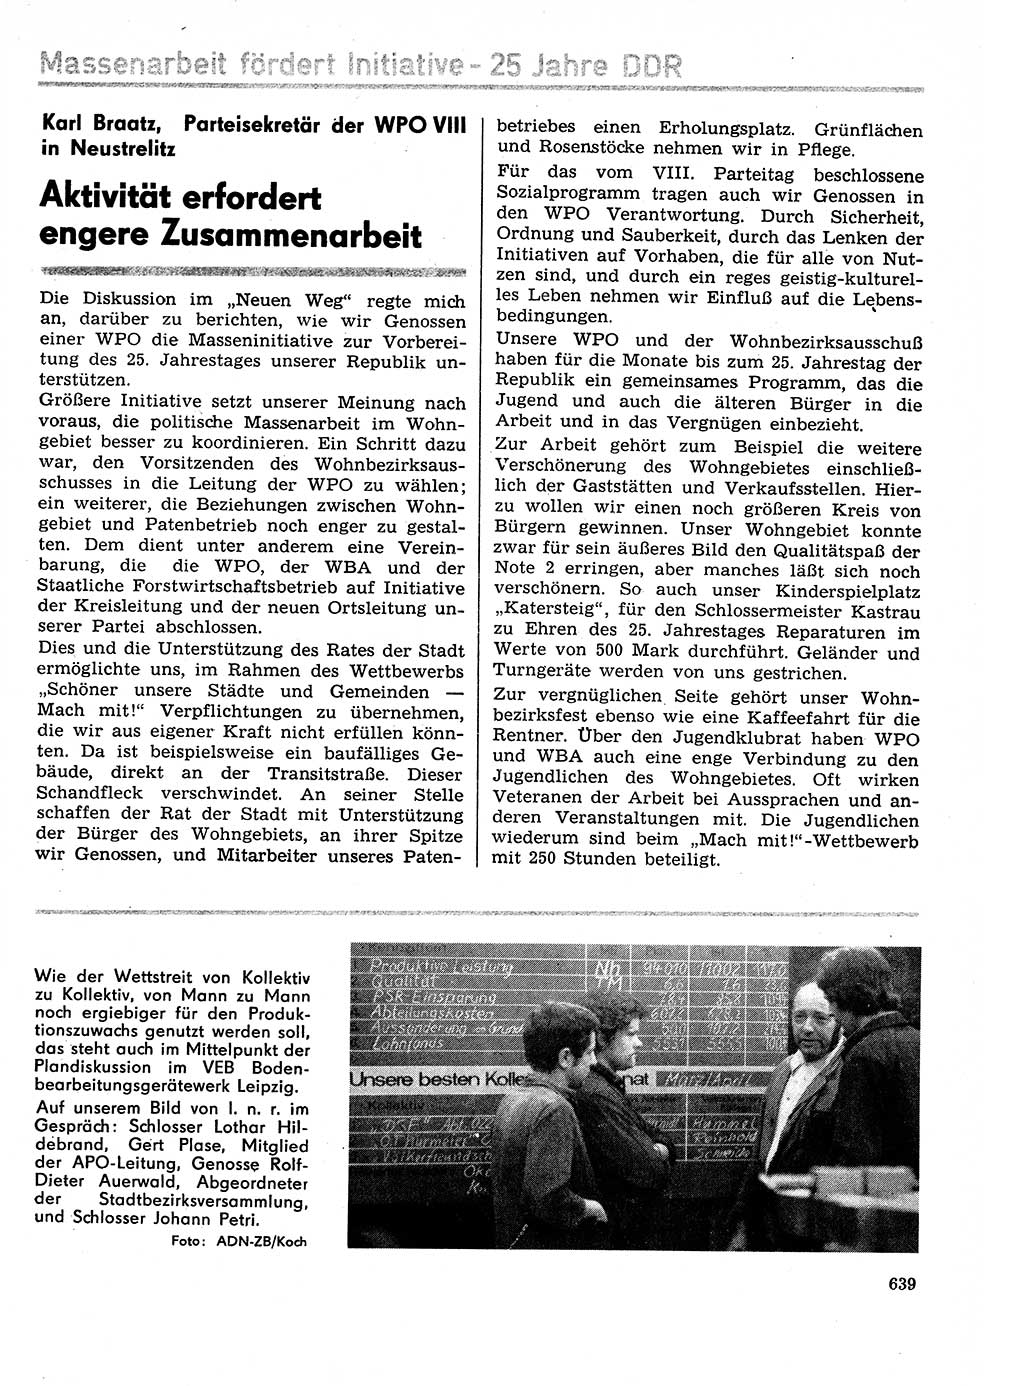 Neuer Weg (NW), Organ des Zentralkomitees (ZK) der SED (Sozialistische Einheitspartei Deutschlands) für Fragen des Parteilebens, 29. Jahrgang [Deutsche Demokratische Republik (DDR)] 1974, Seite 639 (NW ZK SED DDR 1974, S. 639)